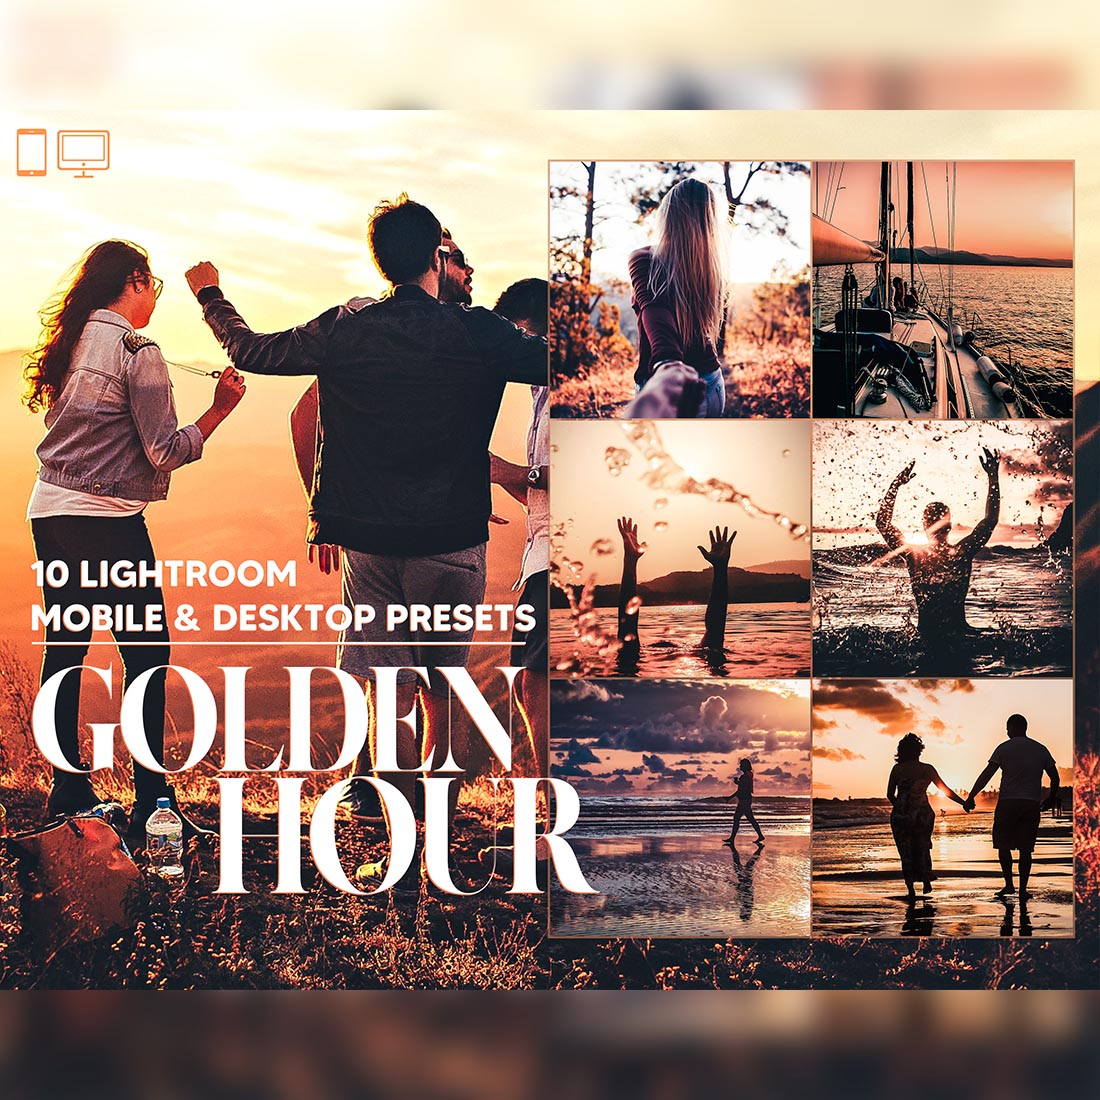 10 Golden Hour Lightroom Presets, Sunset Mobile Preset cover image.